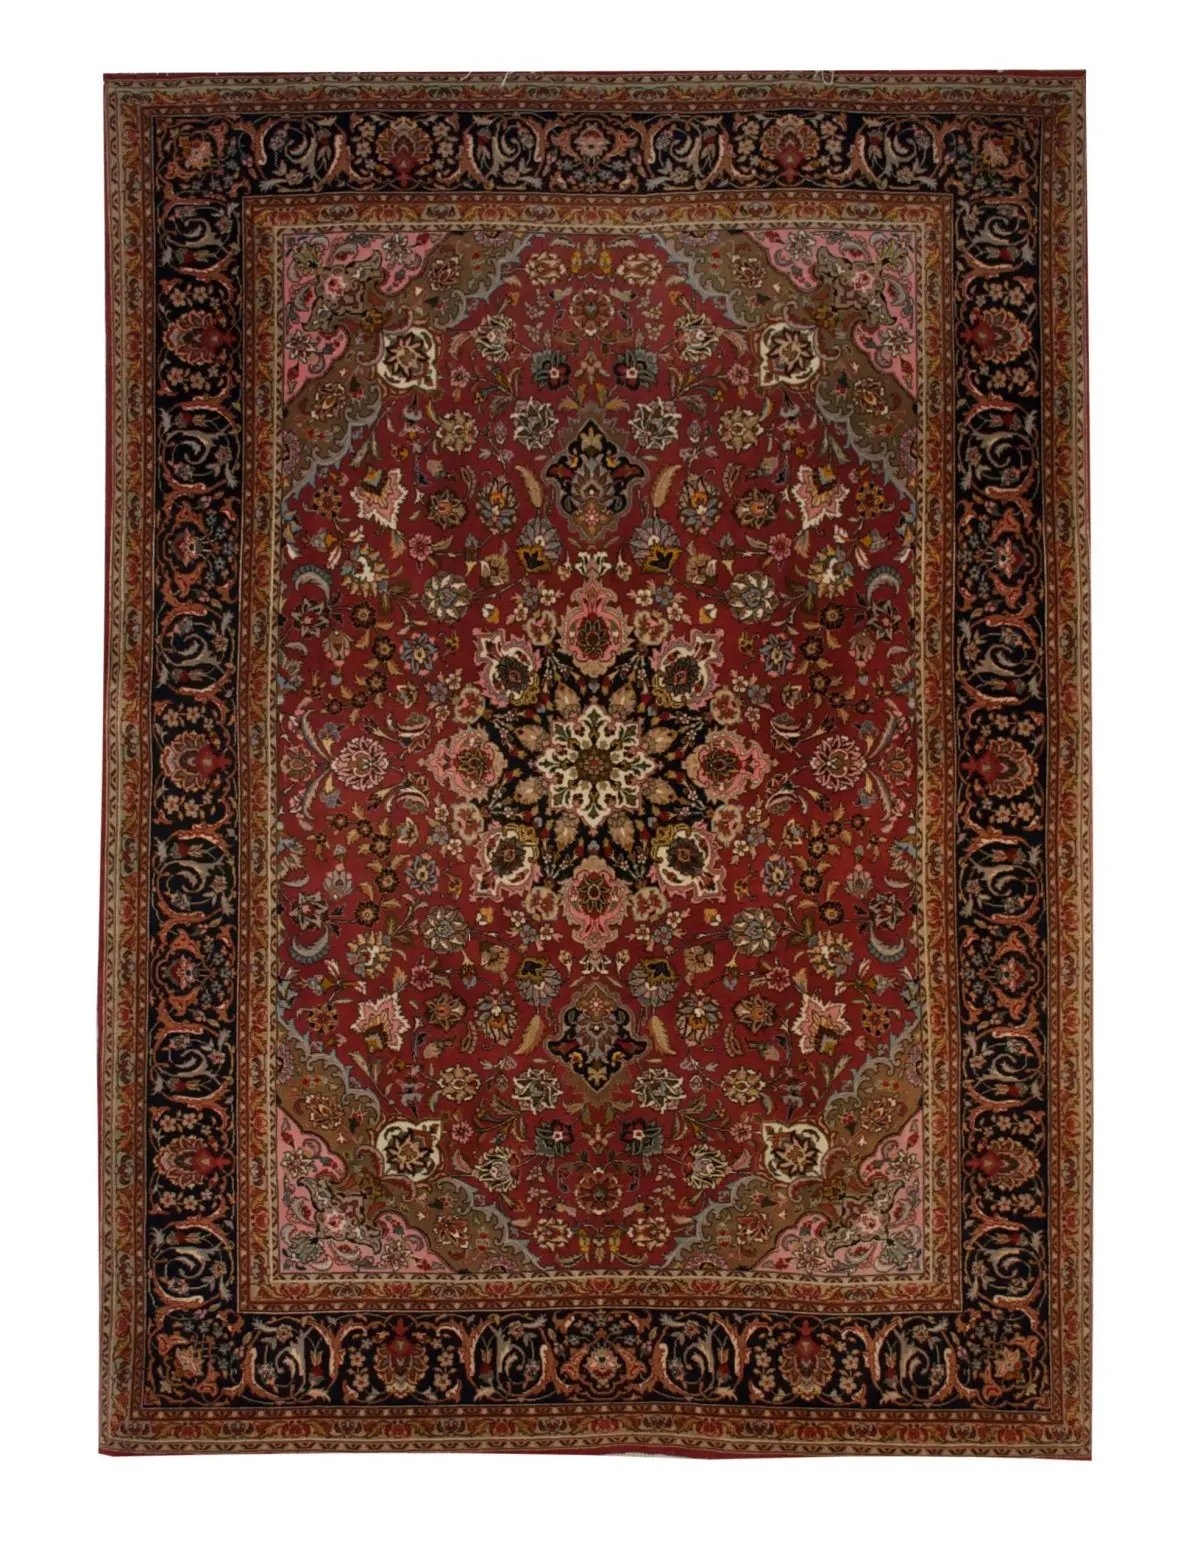 Persian Tabriz rug 5' x 6' 10" - Shabahang Royal Carpet